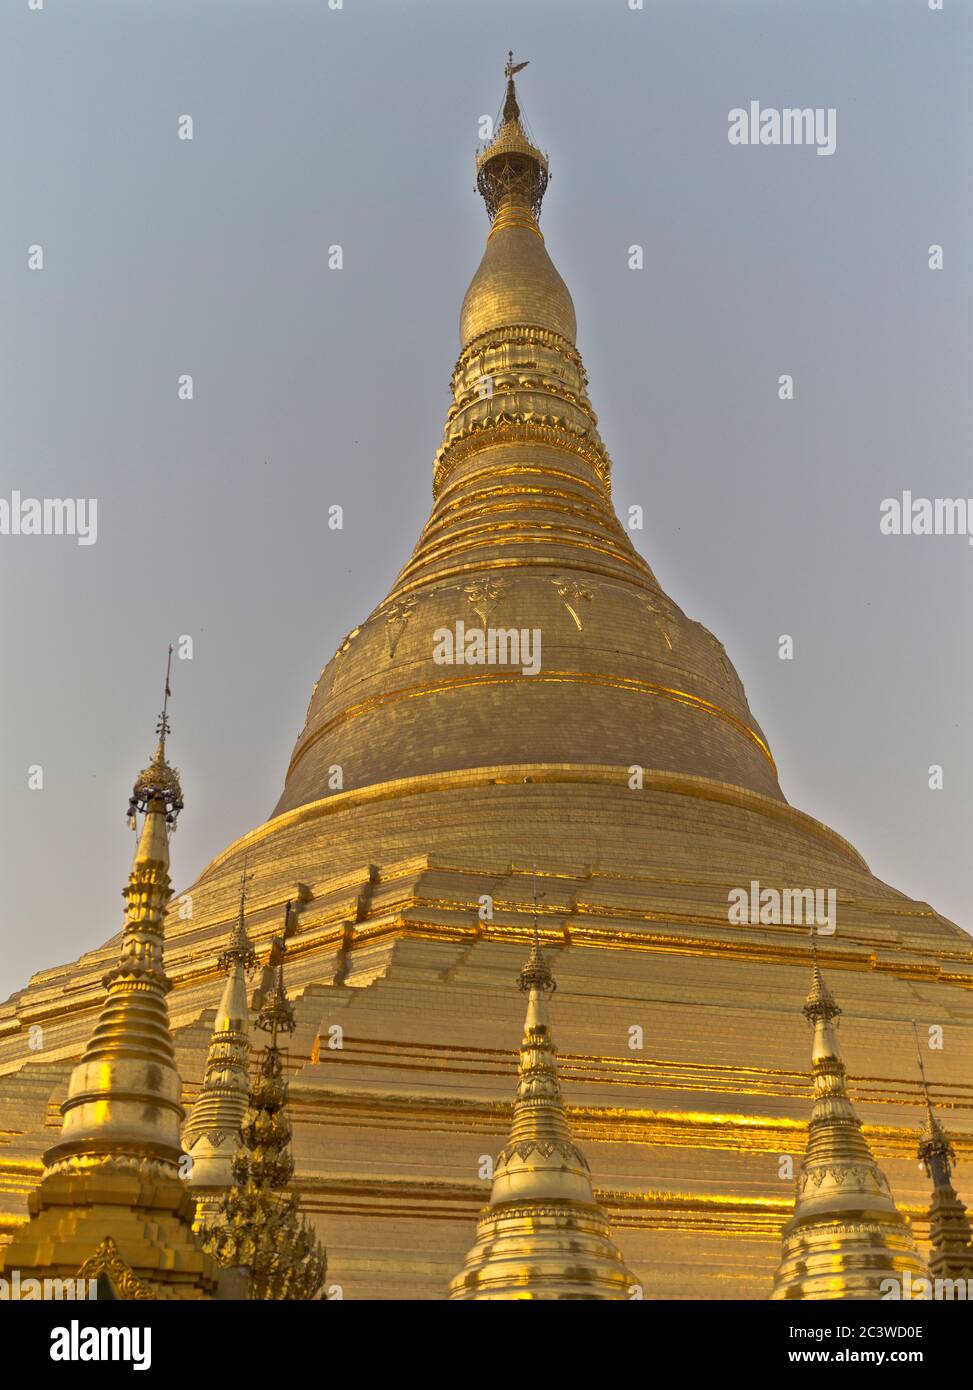 dh Shwedagon Pagoda temple YANGON MYANMAR Buddhist temples Great Dagon Zedi Daw golden stupa burmese gold leaf Stock Photo